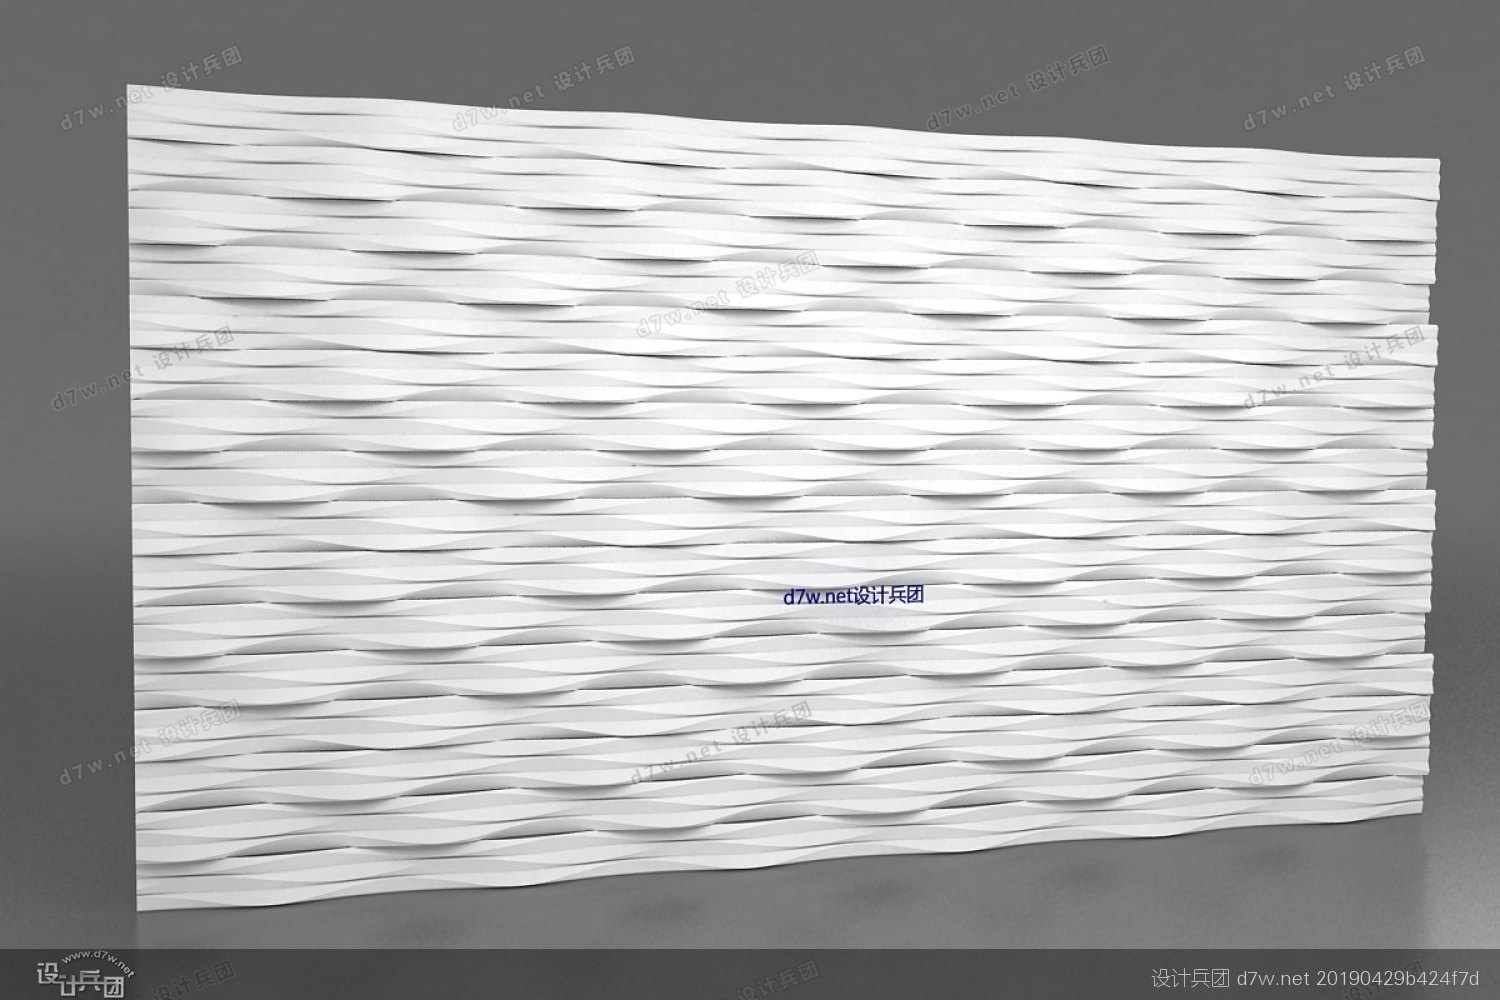 大小立体波浪板墙面背景墙波纹板雕刻造型板室内装饰板材料厂家-阿里巴巴